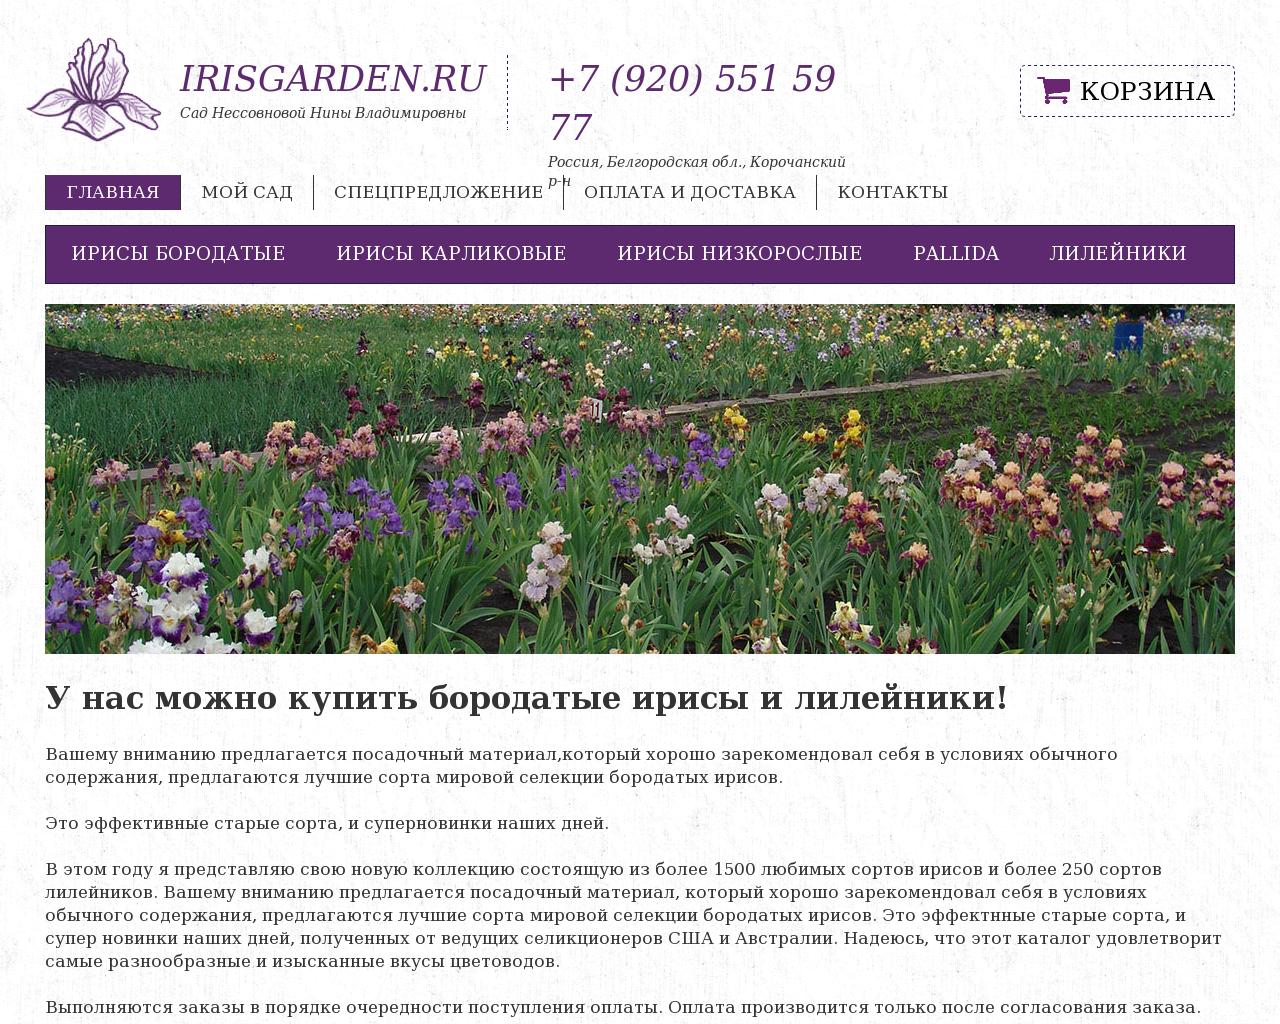 Изображение сайта irisgarden.ru в разрешении 1280x1024